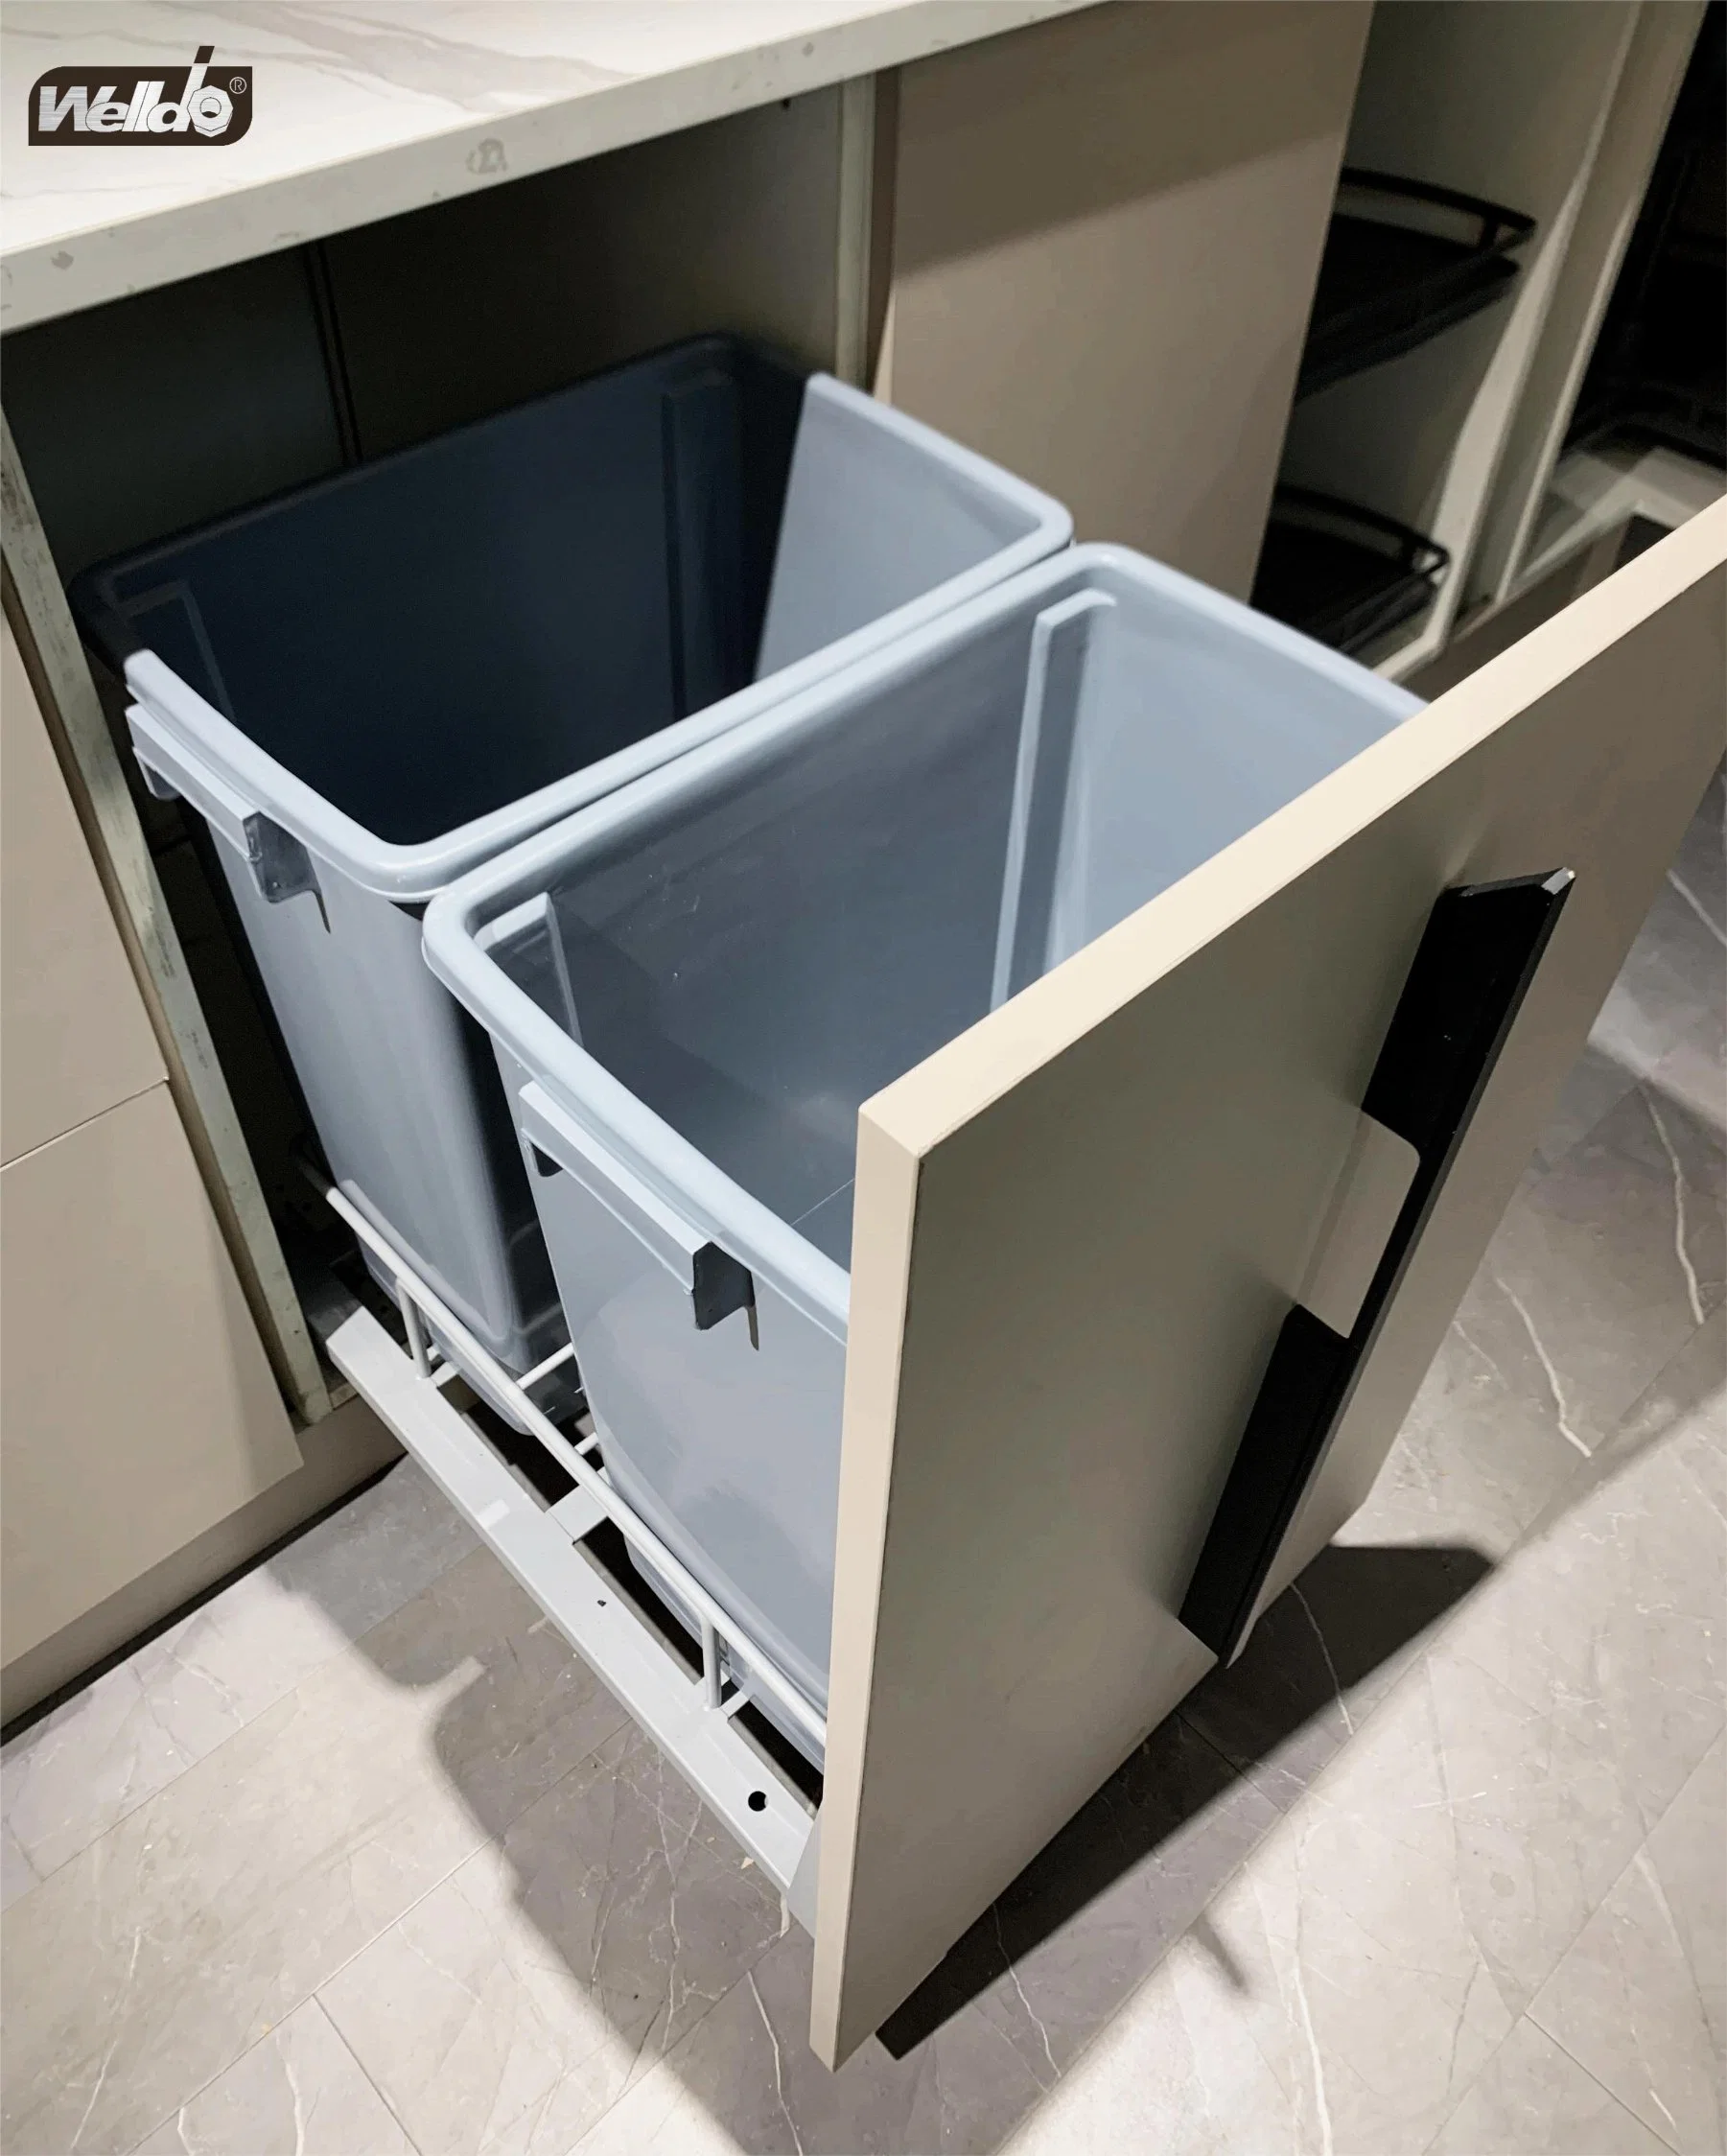 Furniture Hardware Kitchen Cabinet Storage Rack Pull out Waste Bin